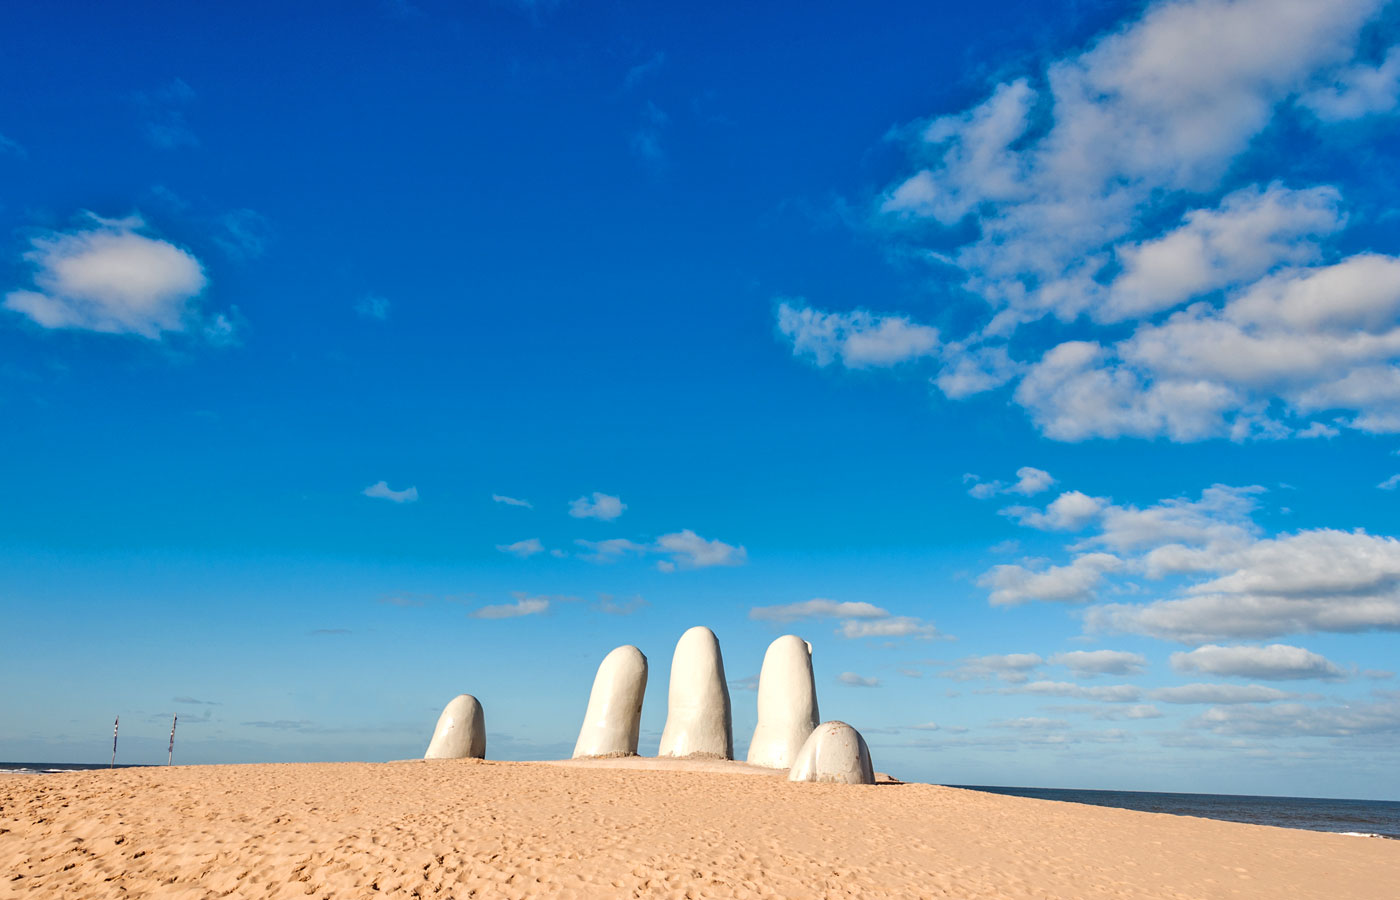 Luxury holidays Punta del Este Uruguay